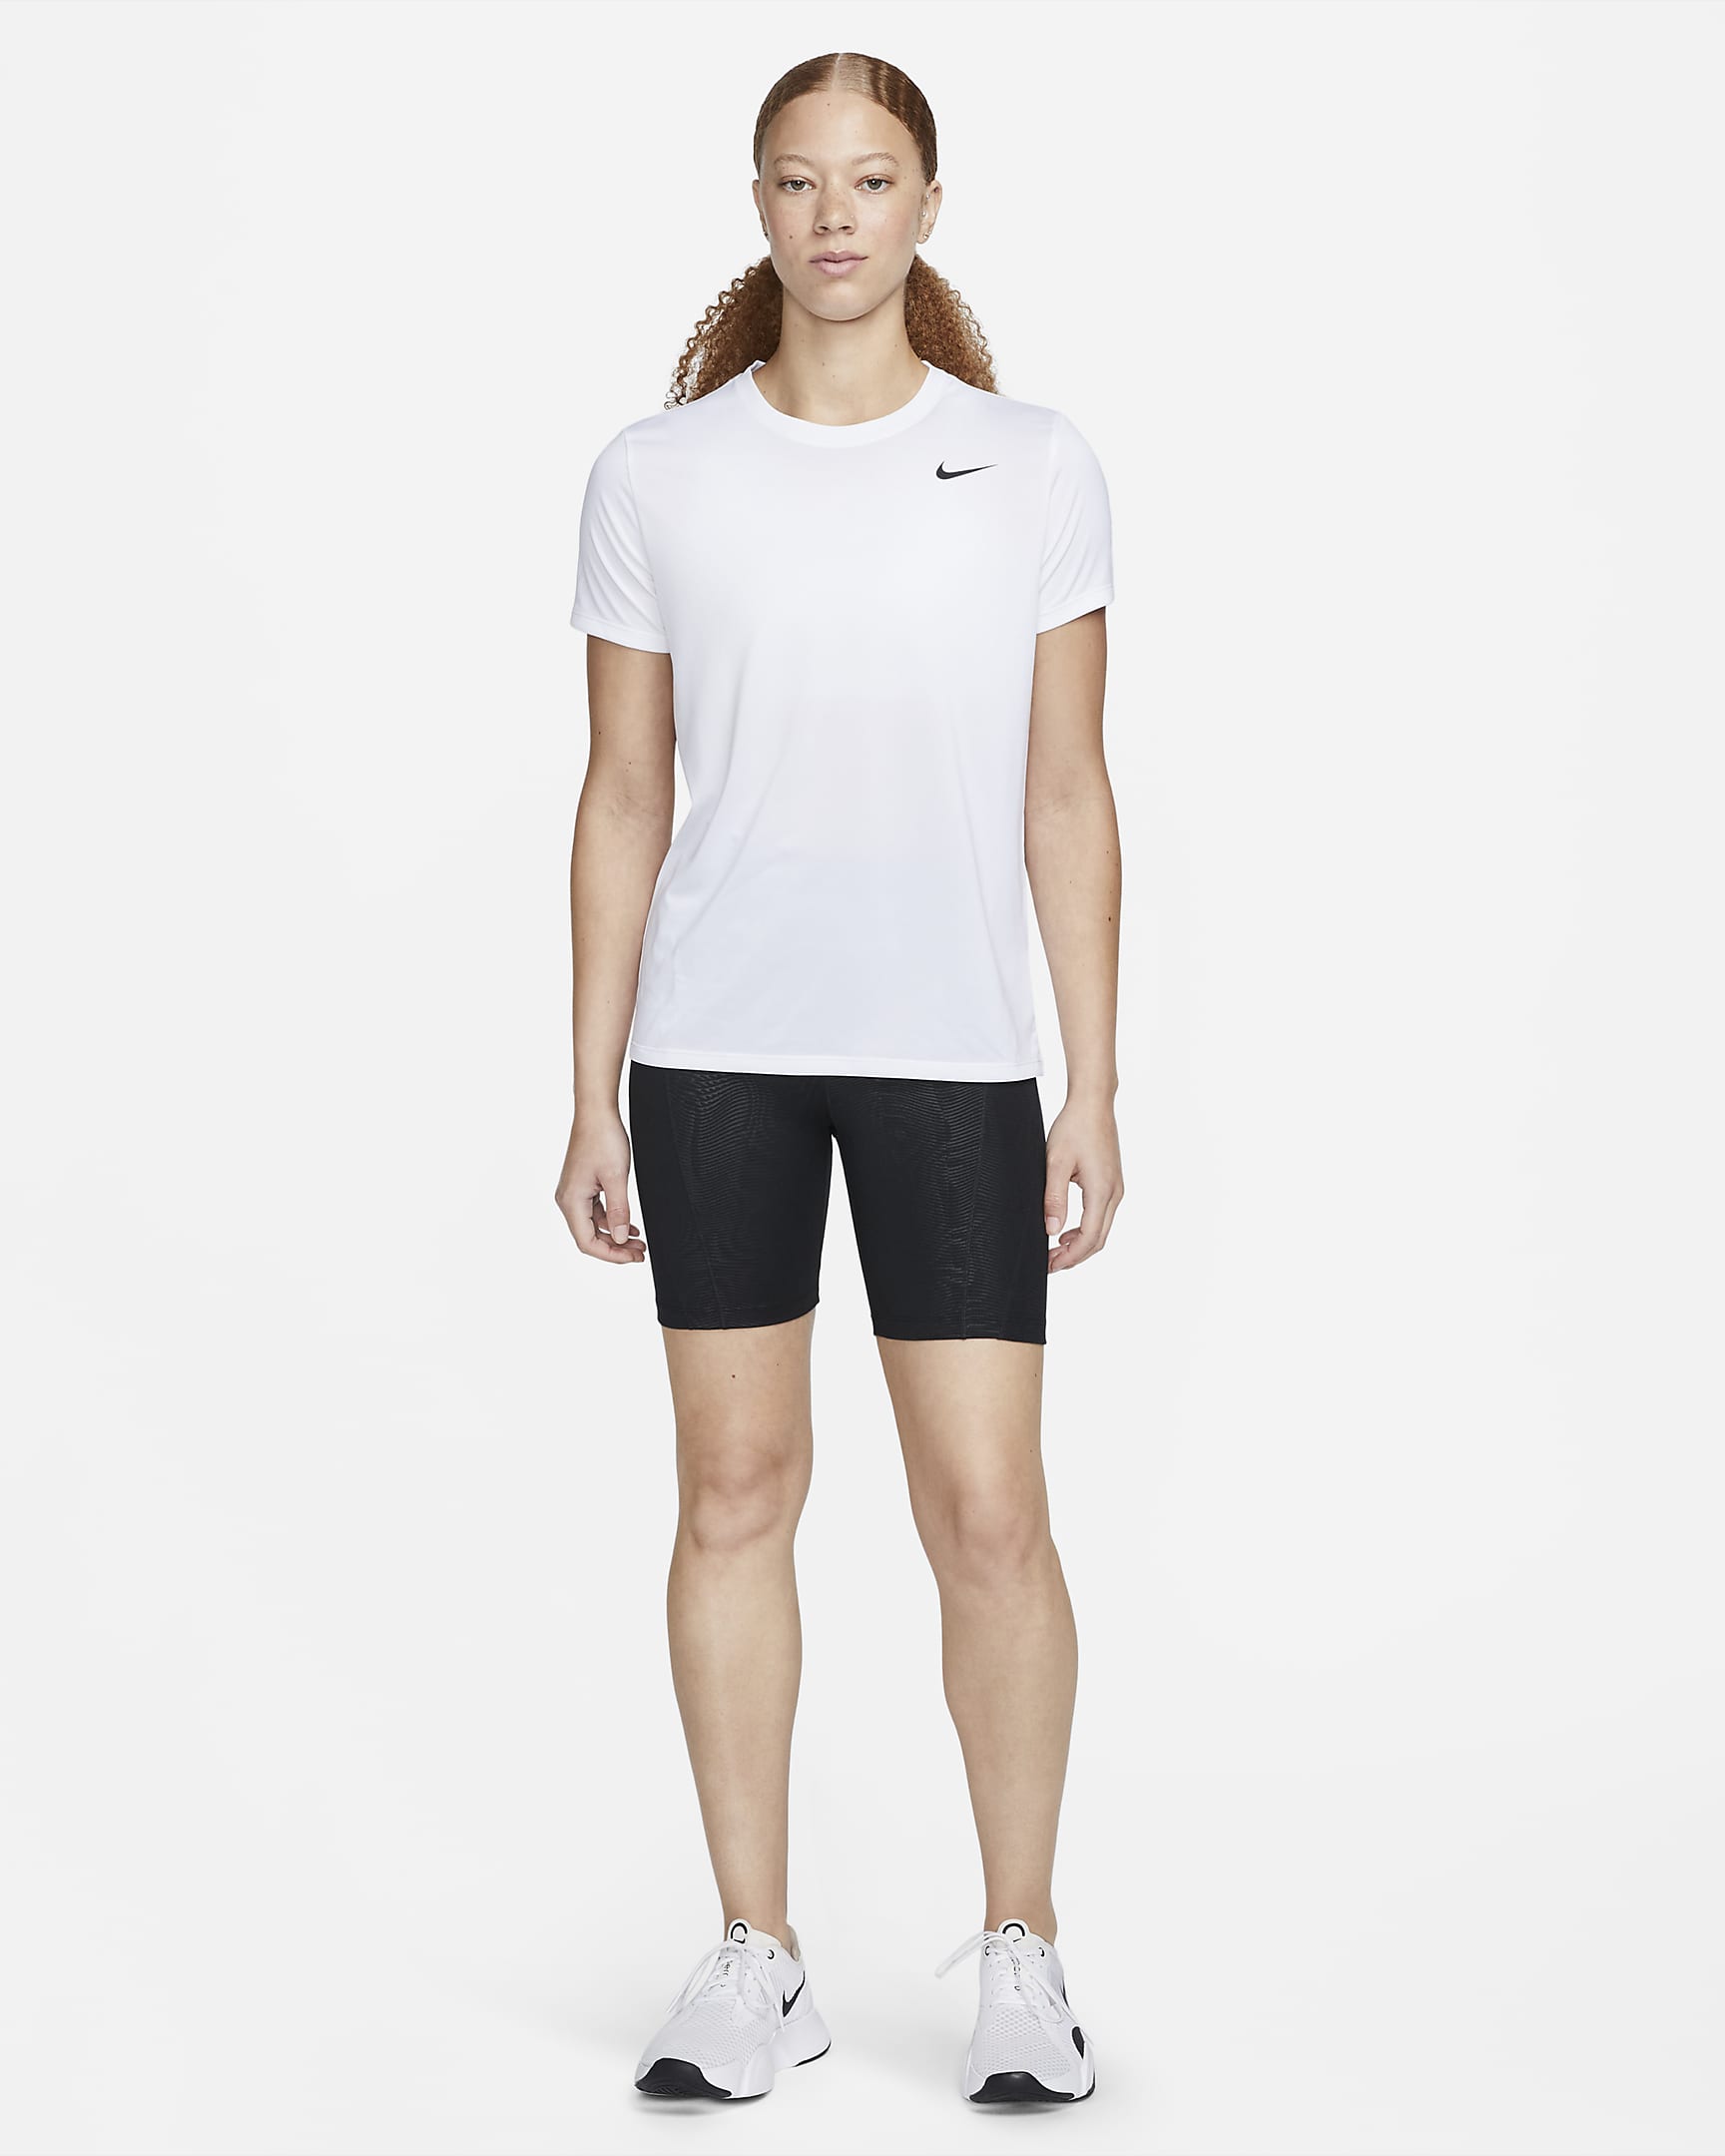 Nike Dri-FIT Women's T-Shirt - White/Black